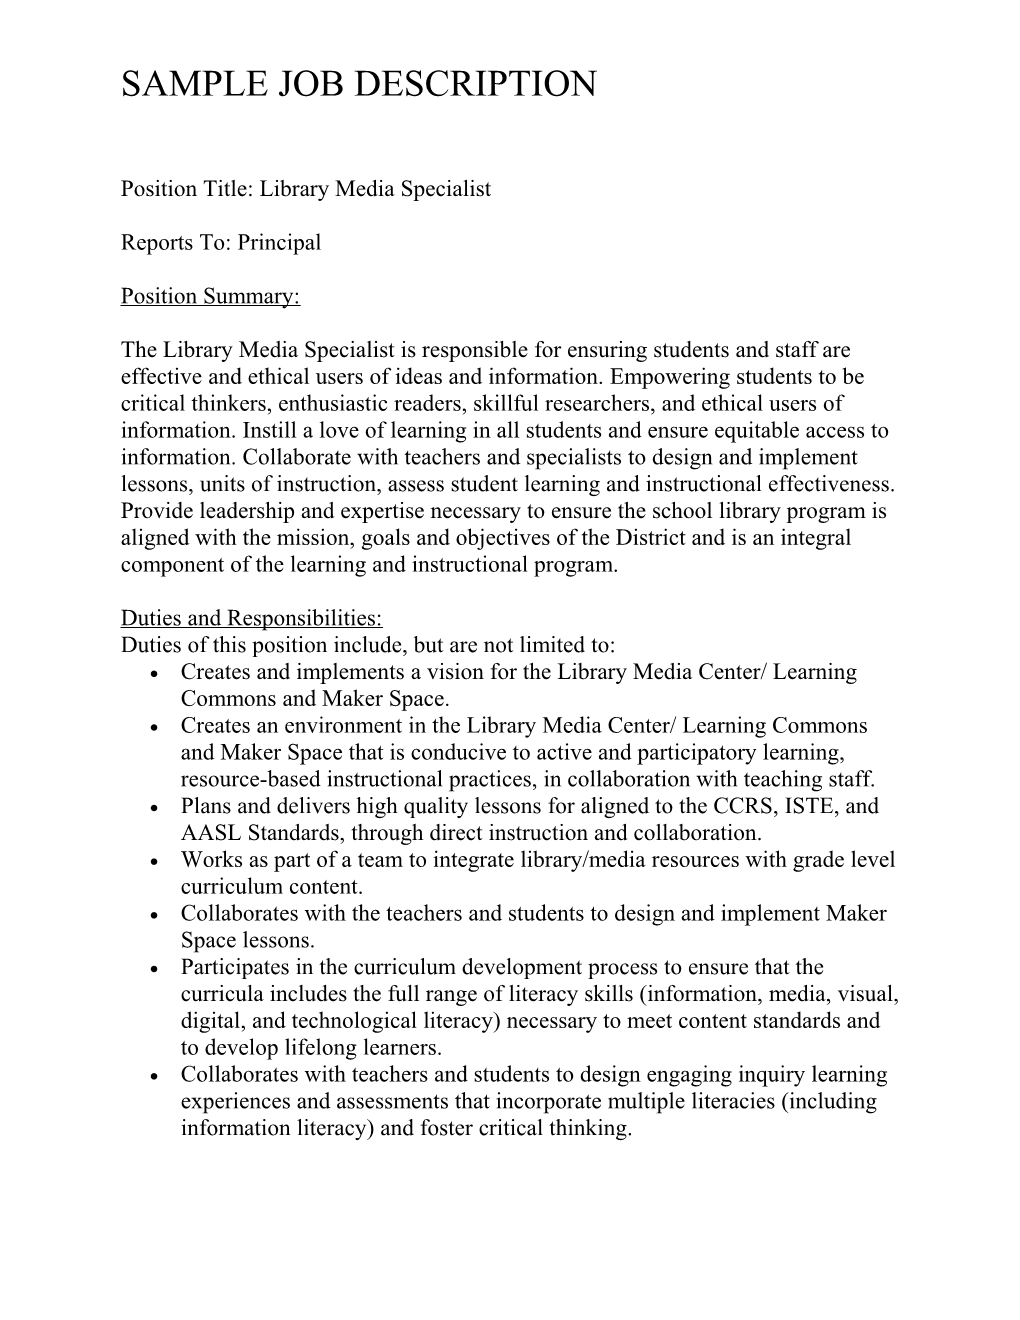 Library Media Specialist Sample Job Description